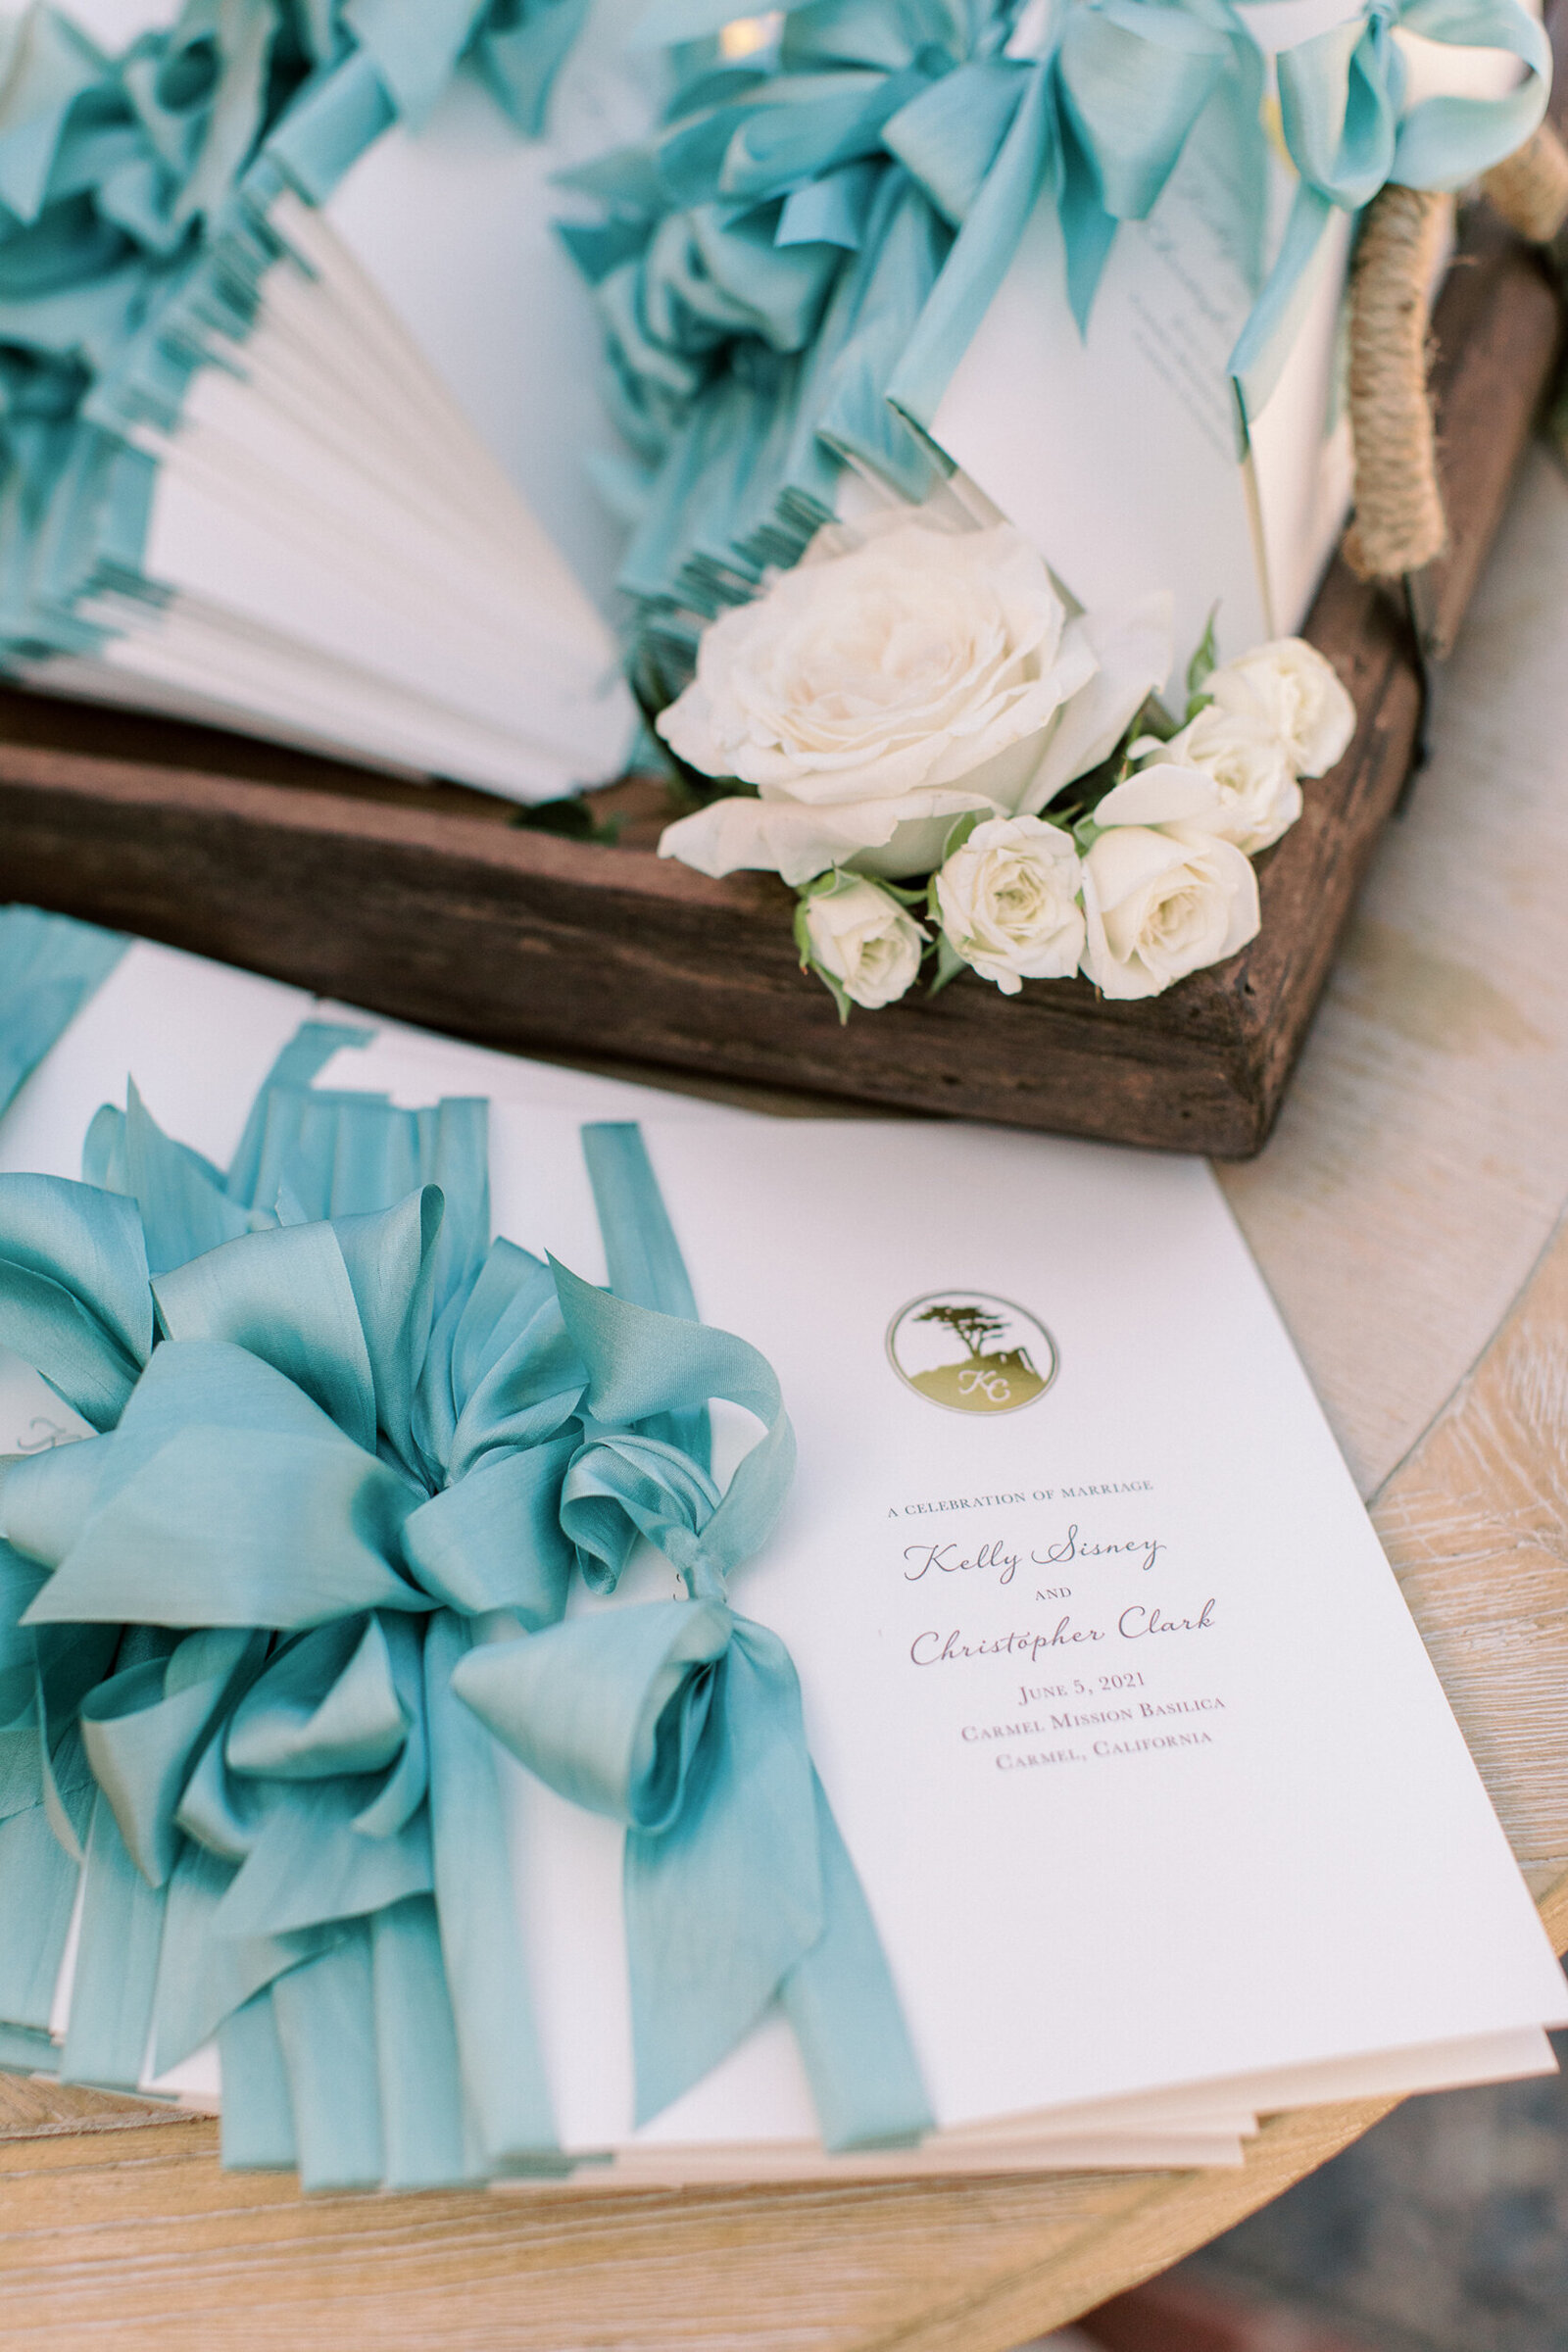 WeddingInvitations-PaperByTheBay-PebbleBeach-CarlieStatsky-004